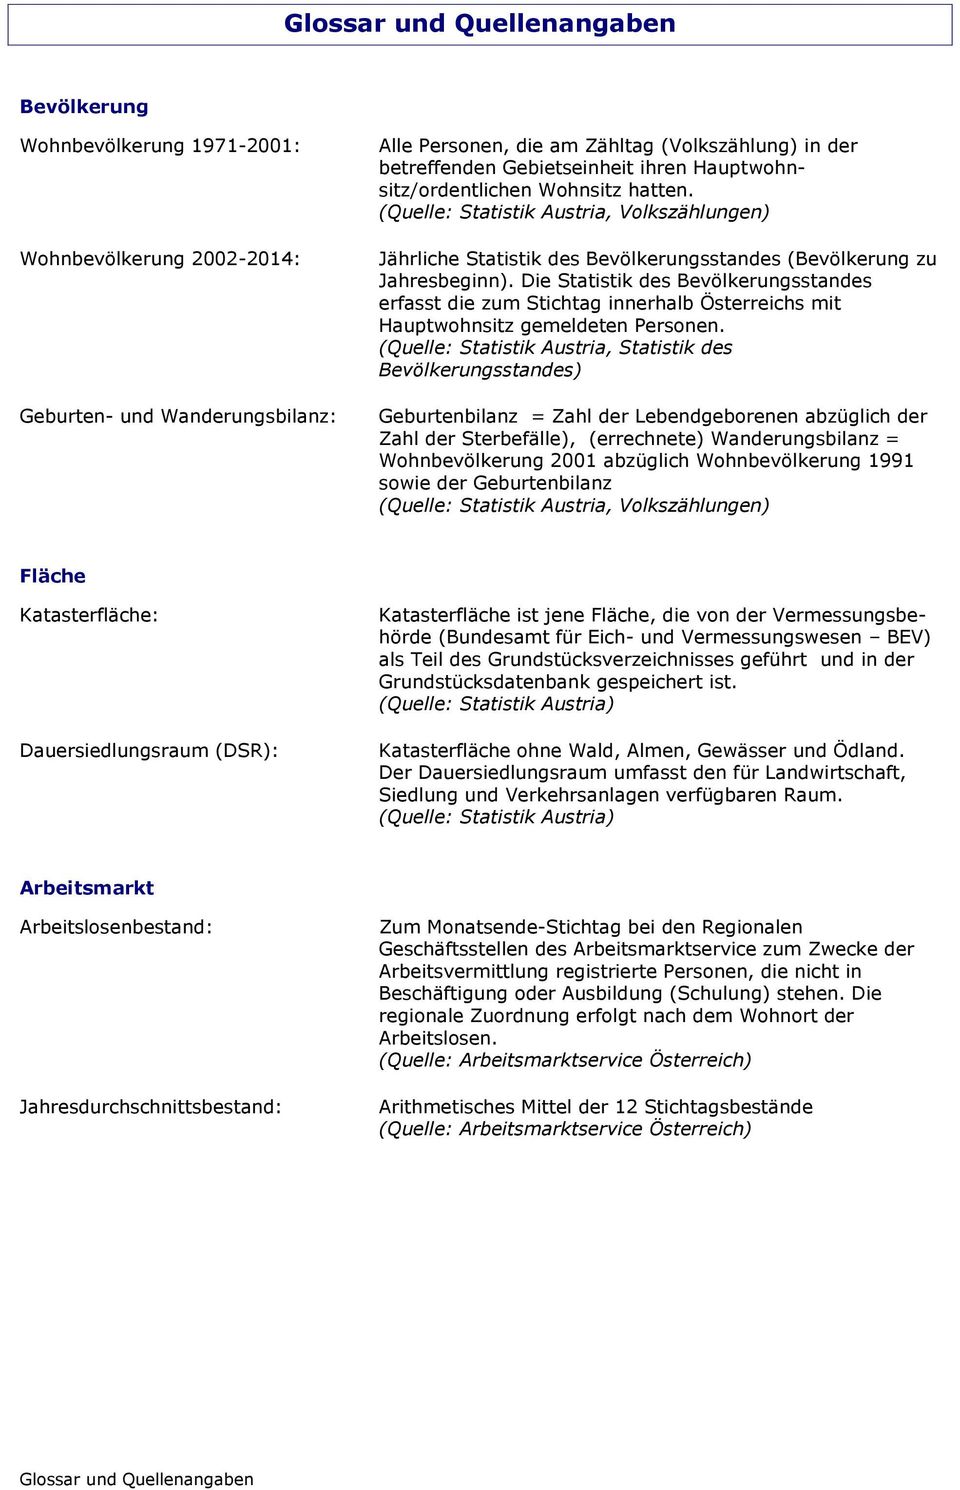 Die Statistik des Bevölkerungsstandes erfasst die zum Stichtag innerhalb Österreichs mit Hauptwohnsitz gemeldeten Personen.